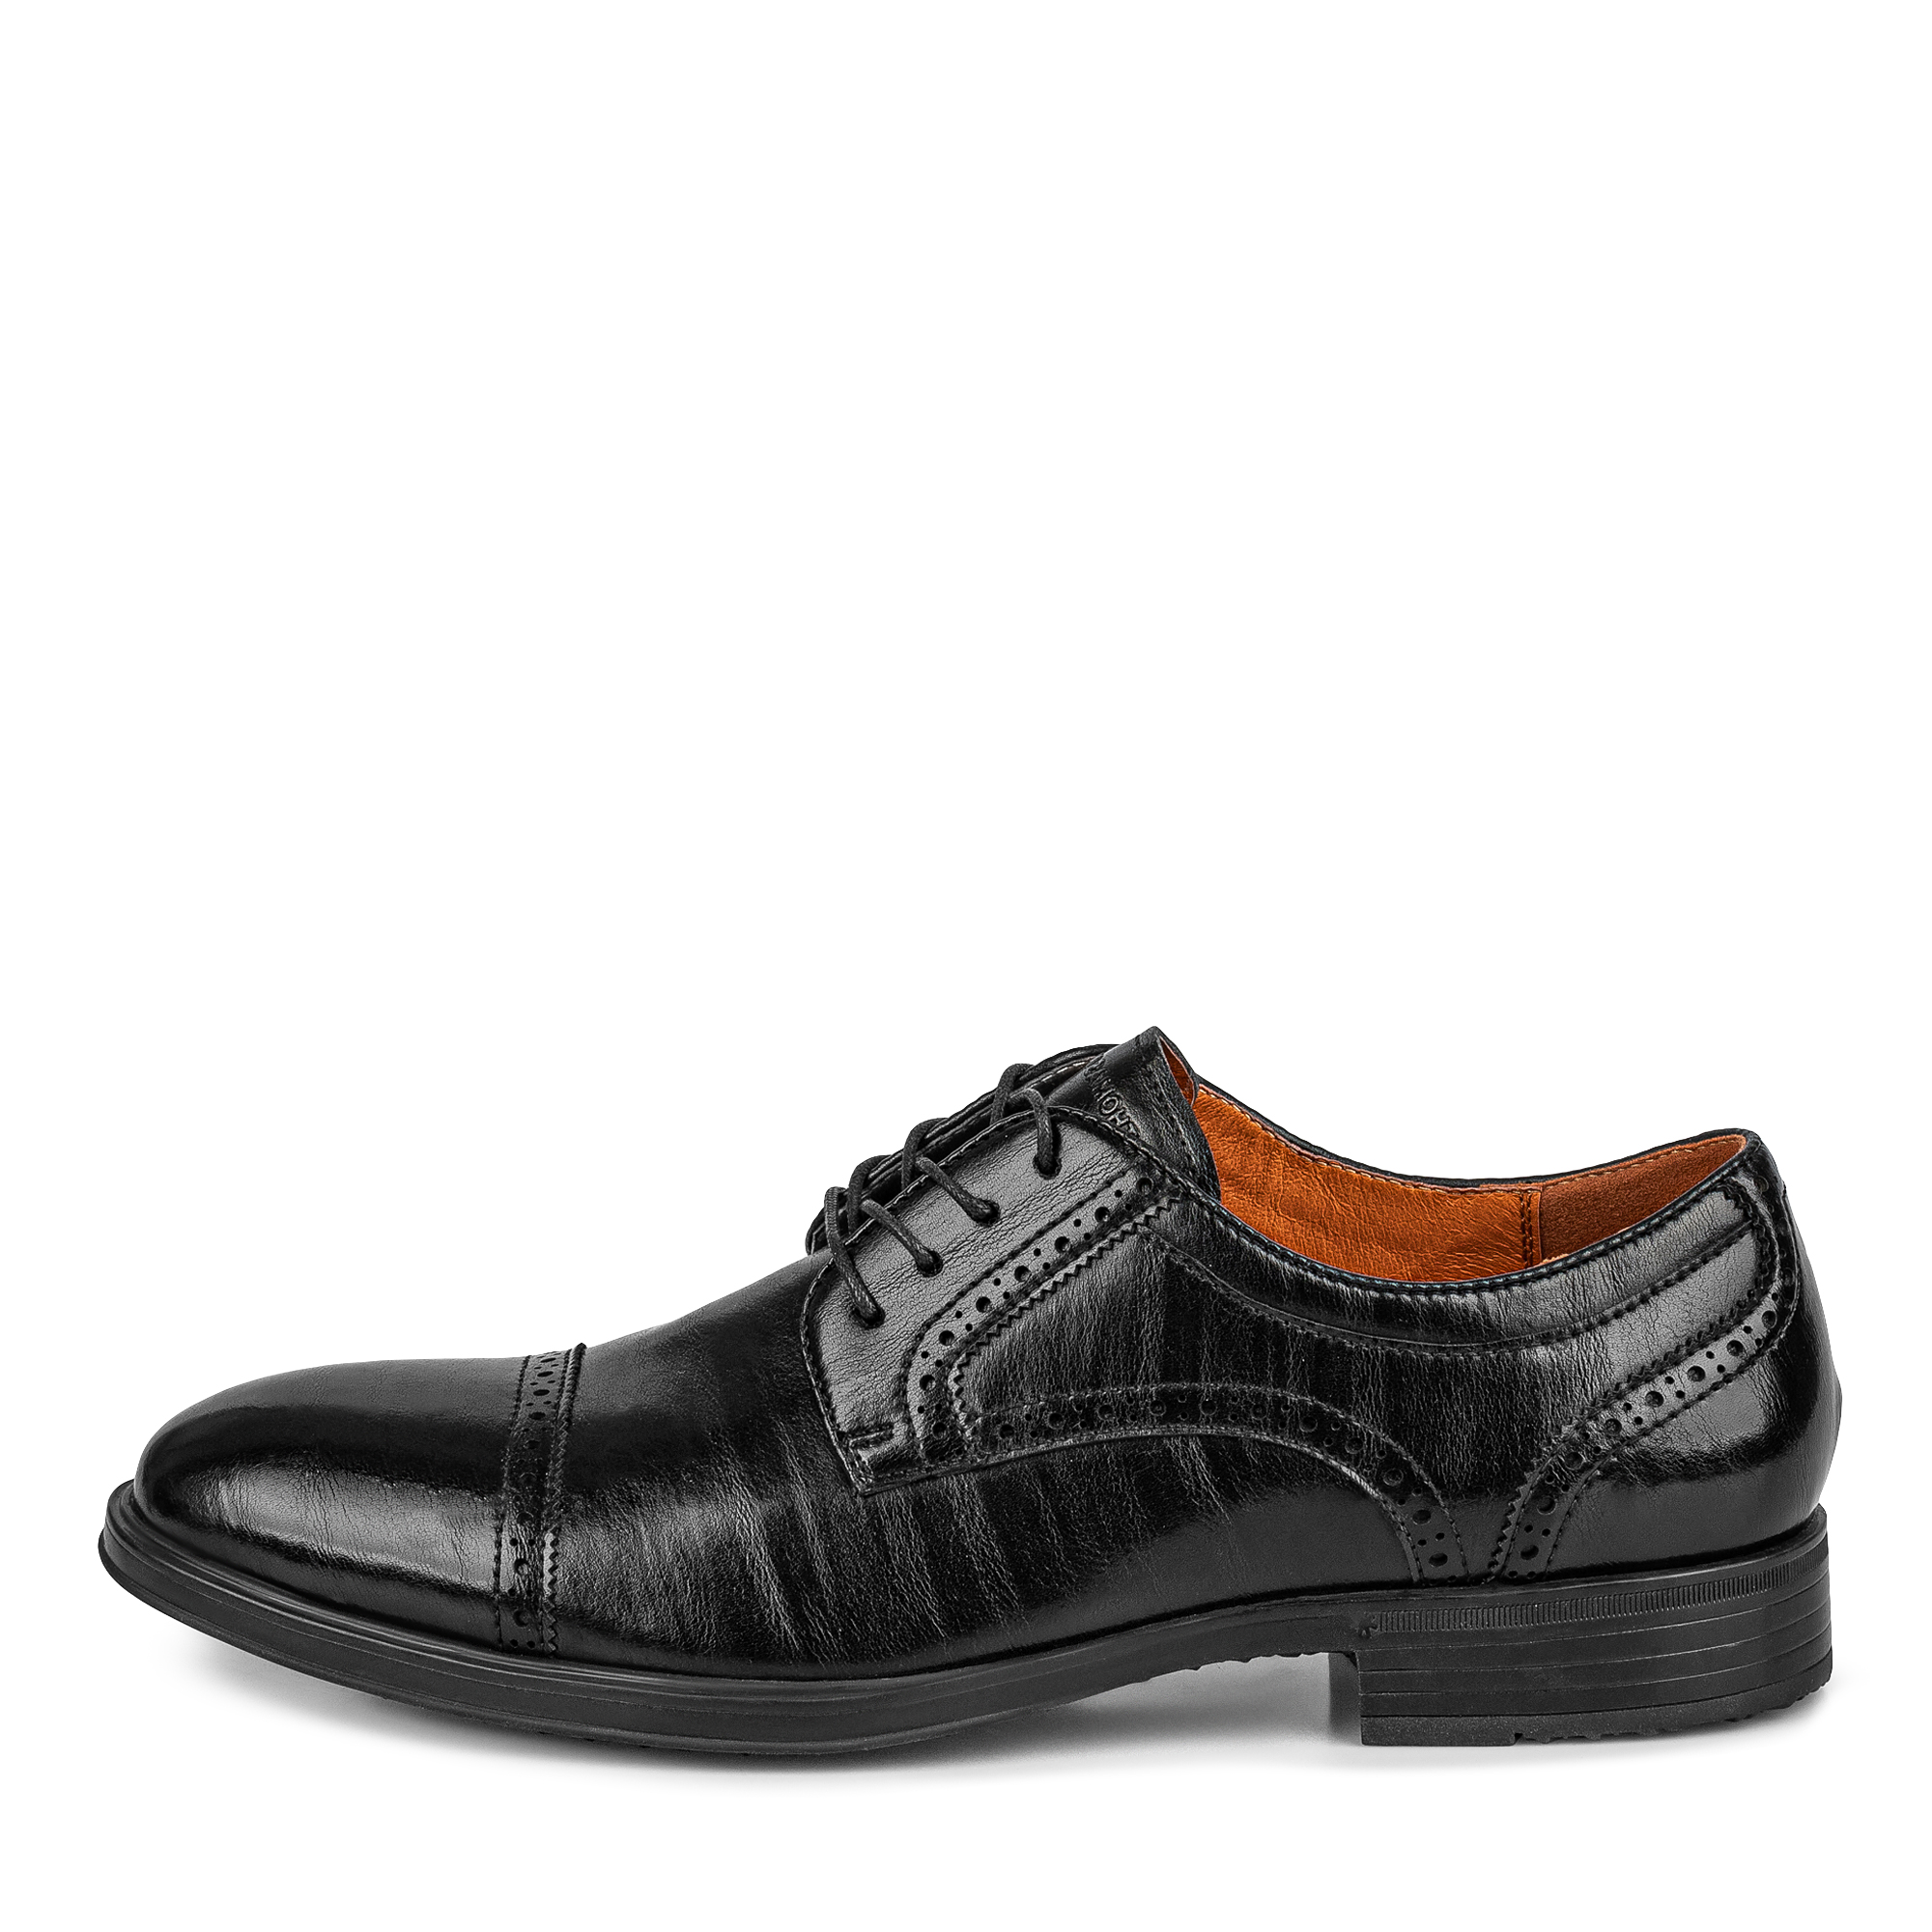 Туфли/полуботинки Thomas Munz 104-648B-1602, цвет черный, размер 43